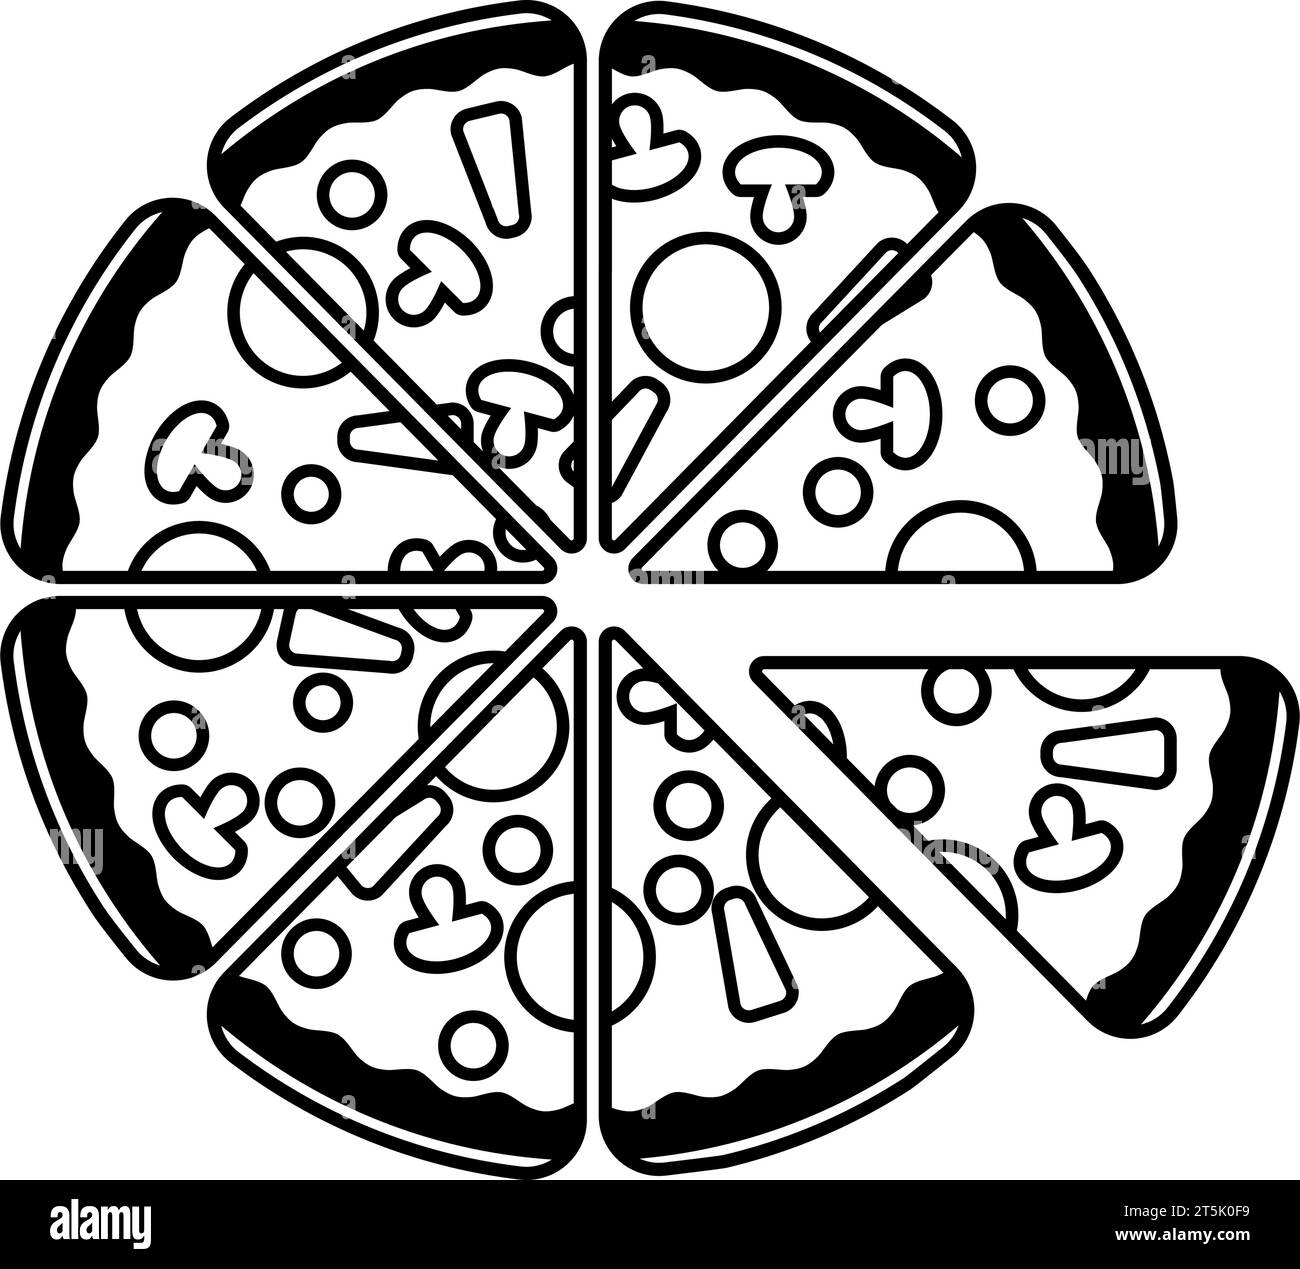 Vue de haut en bas d'une pizza ou tarte à pizza pour le concept de pizzeria dans le vecteur Illustration de Vecteur